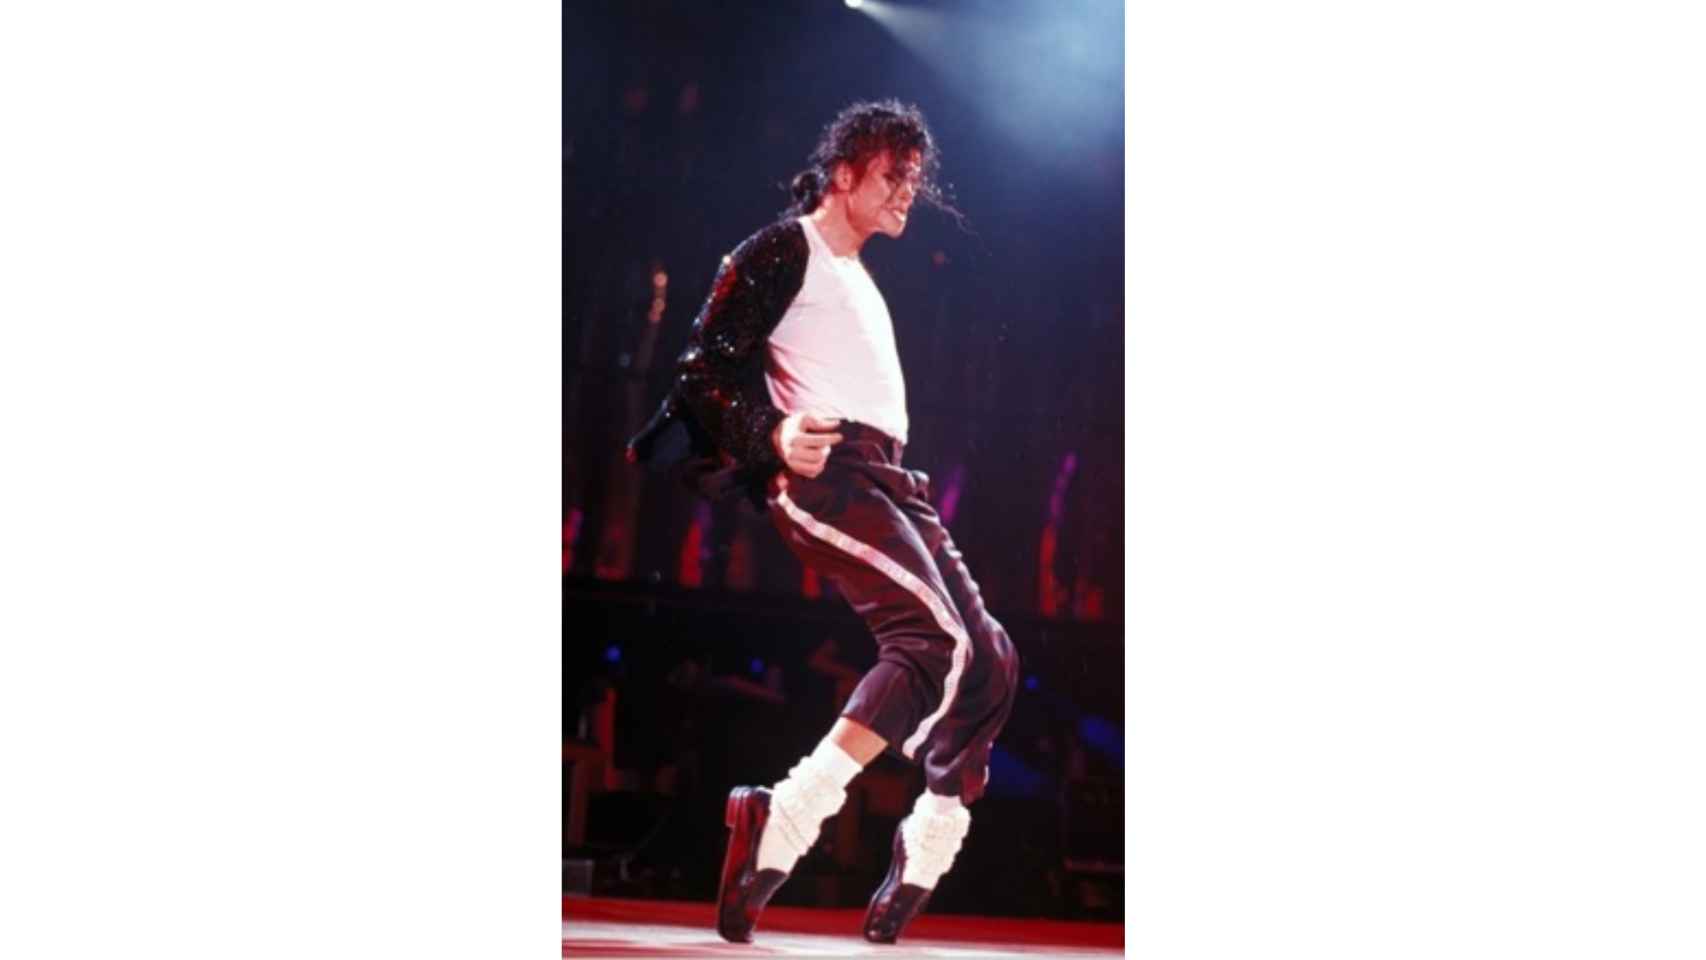 El cantante deslumbraba sobre el escenario con sus estilismos donde los calcetines eran los grandes protagonistas. | Foto: Getty Images.